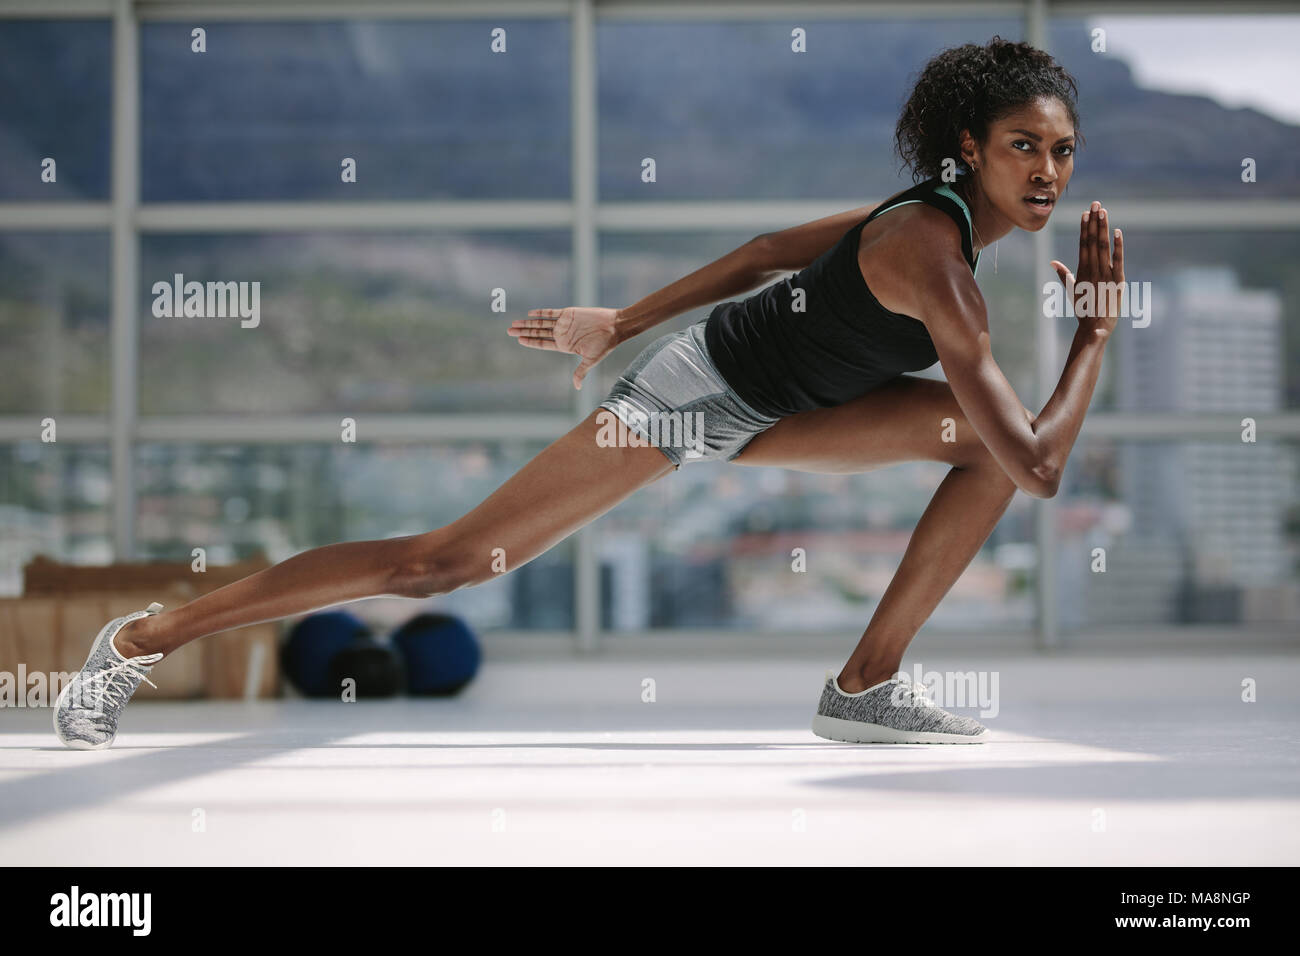 Donna africana con corpo sottile che si esercita in palestra. fitness femminile durante una sessione di allenamento fisico centro benessere. Foto Stock